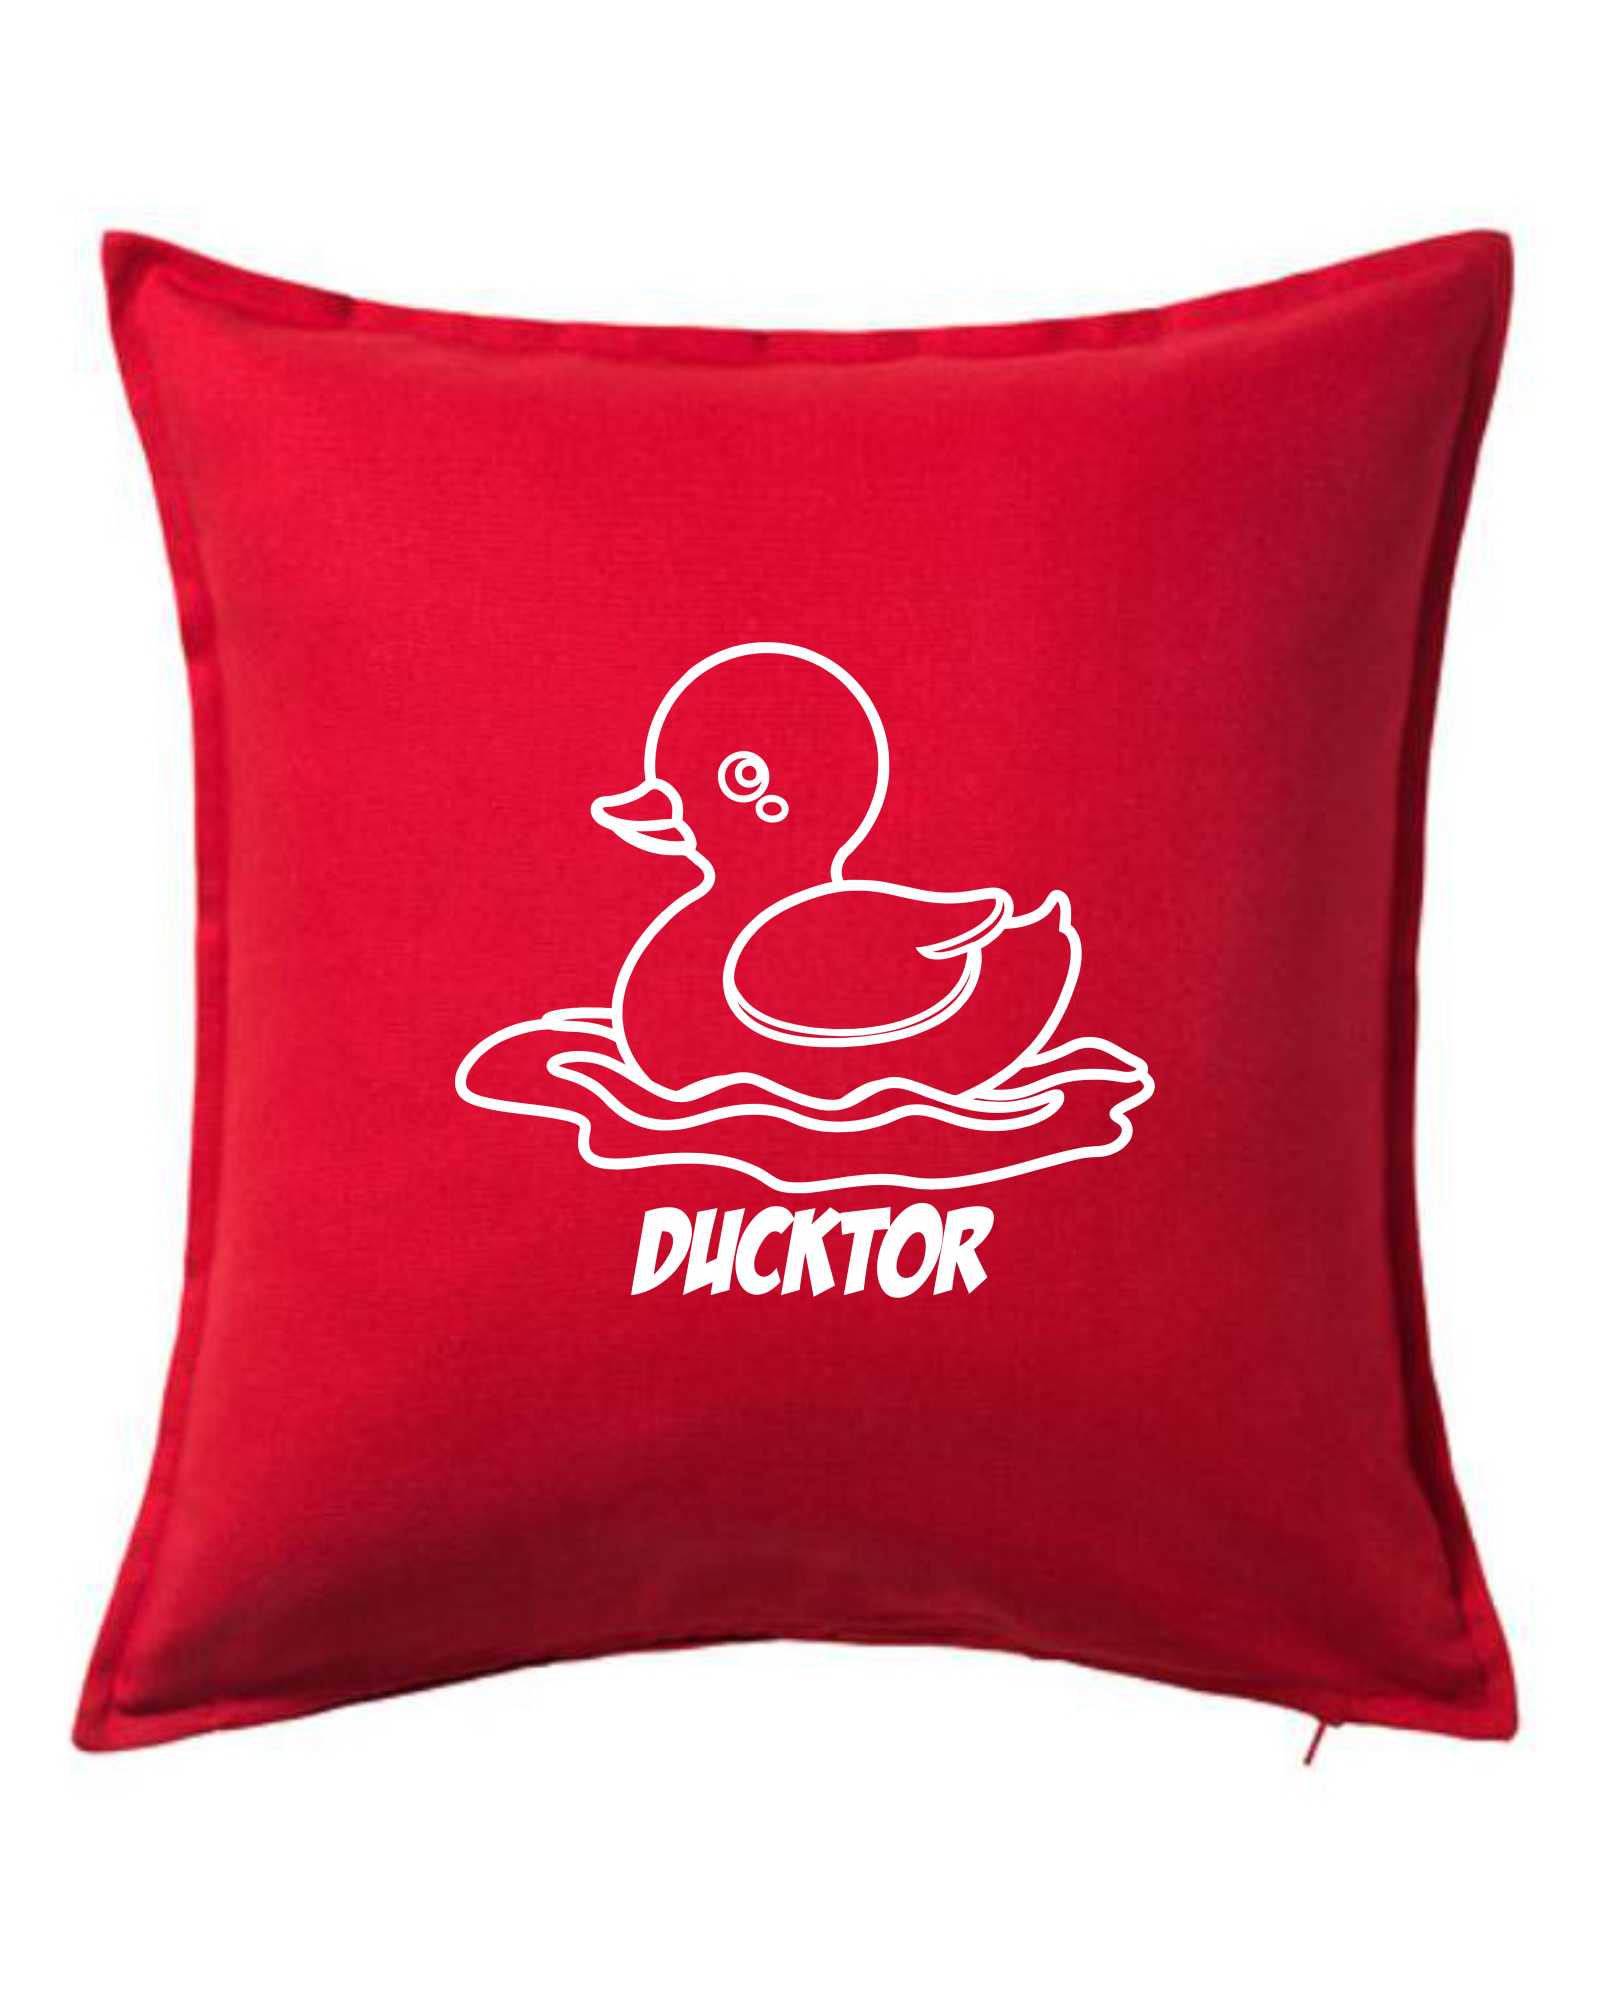 Ducktor - Polštář 50x50